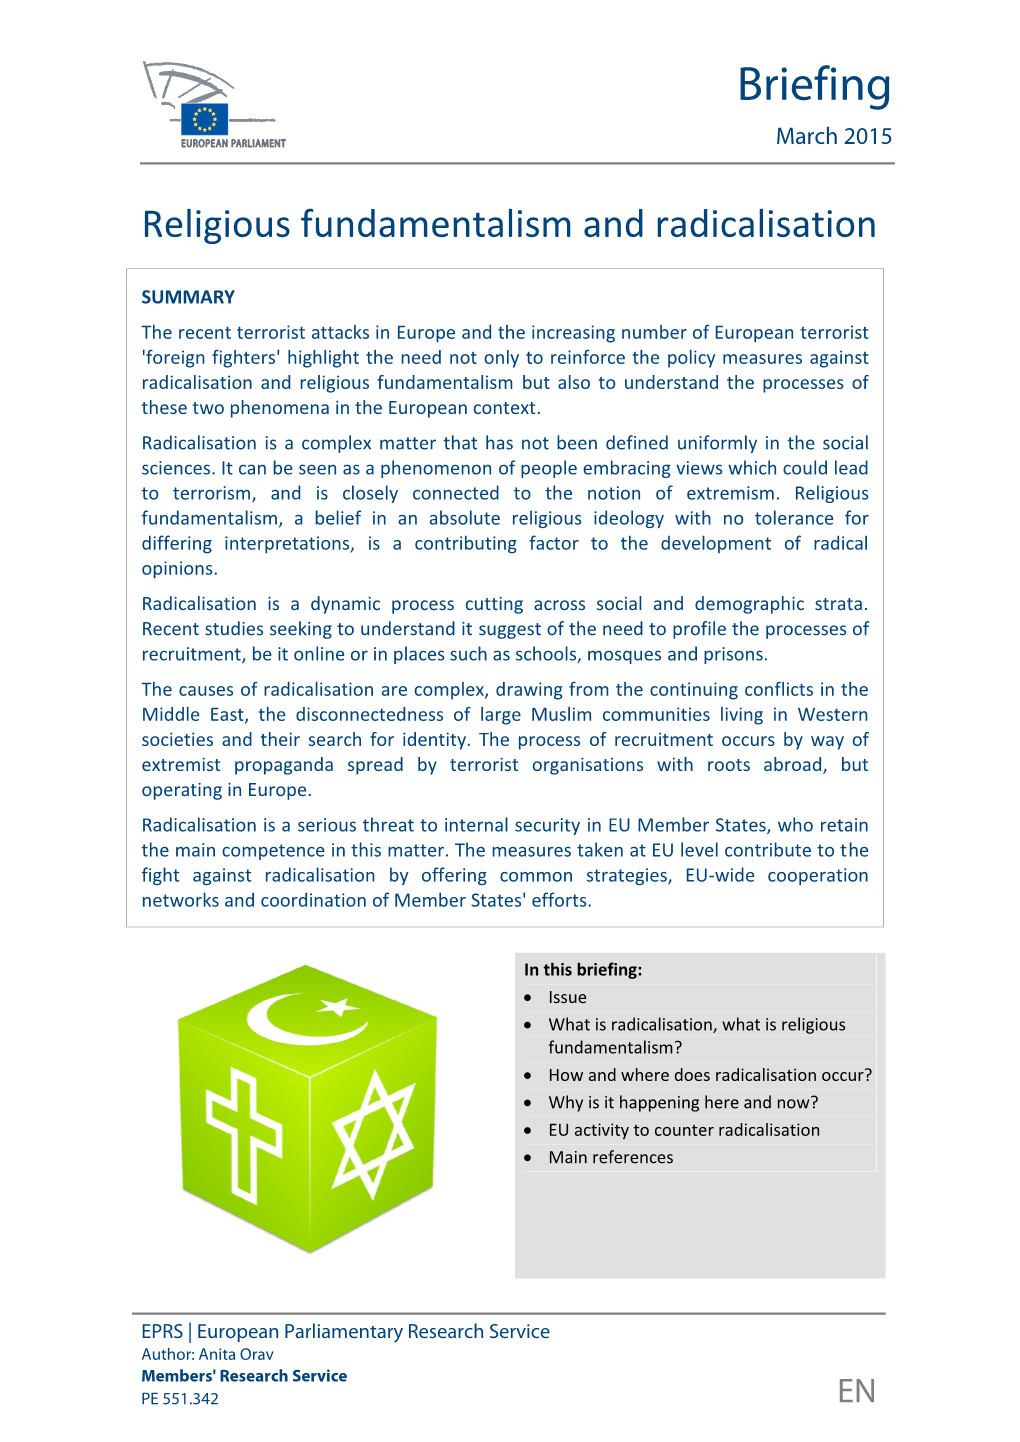 Religious Fundamentalism and Radicalisation